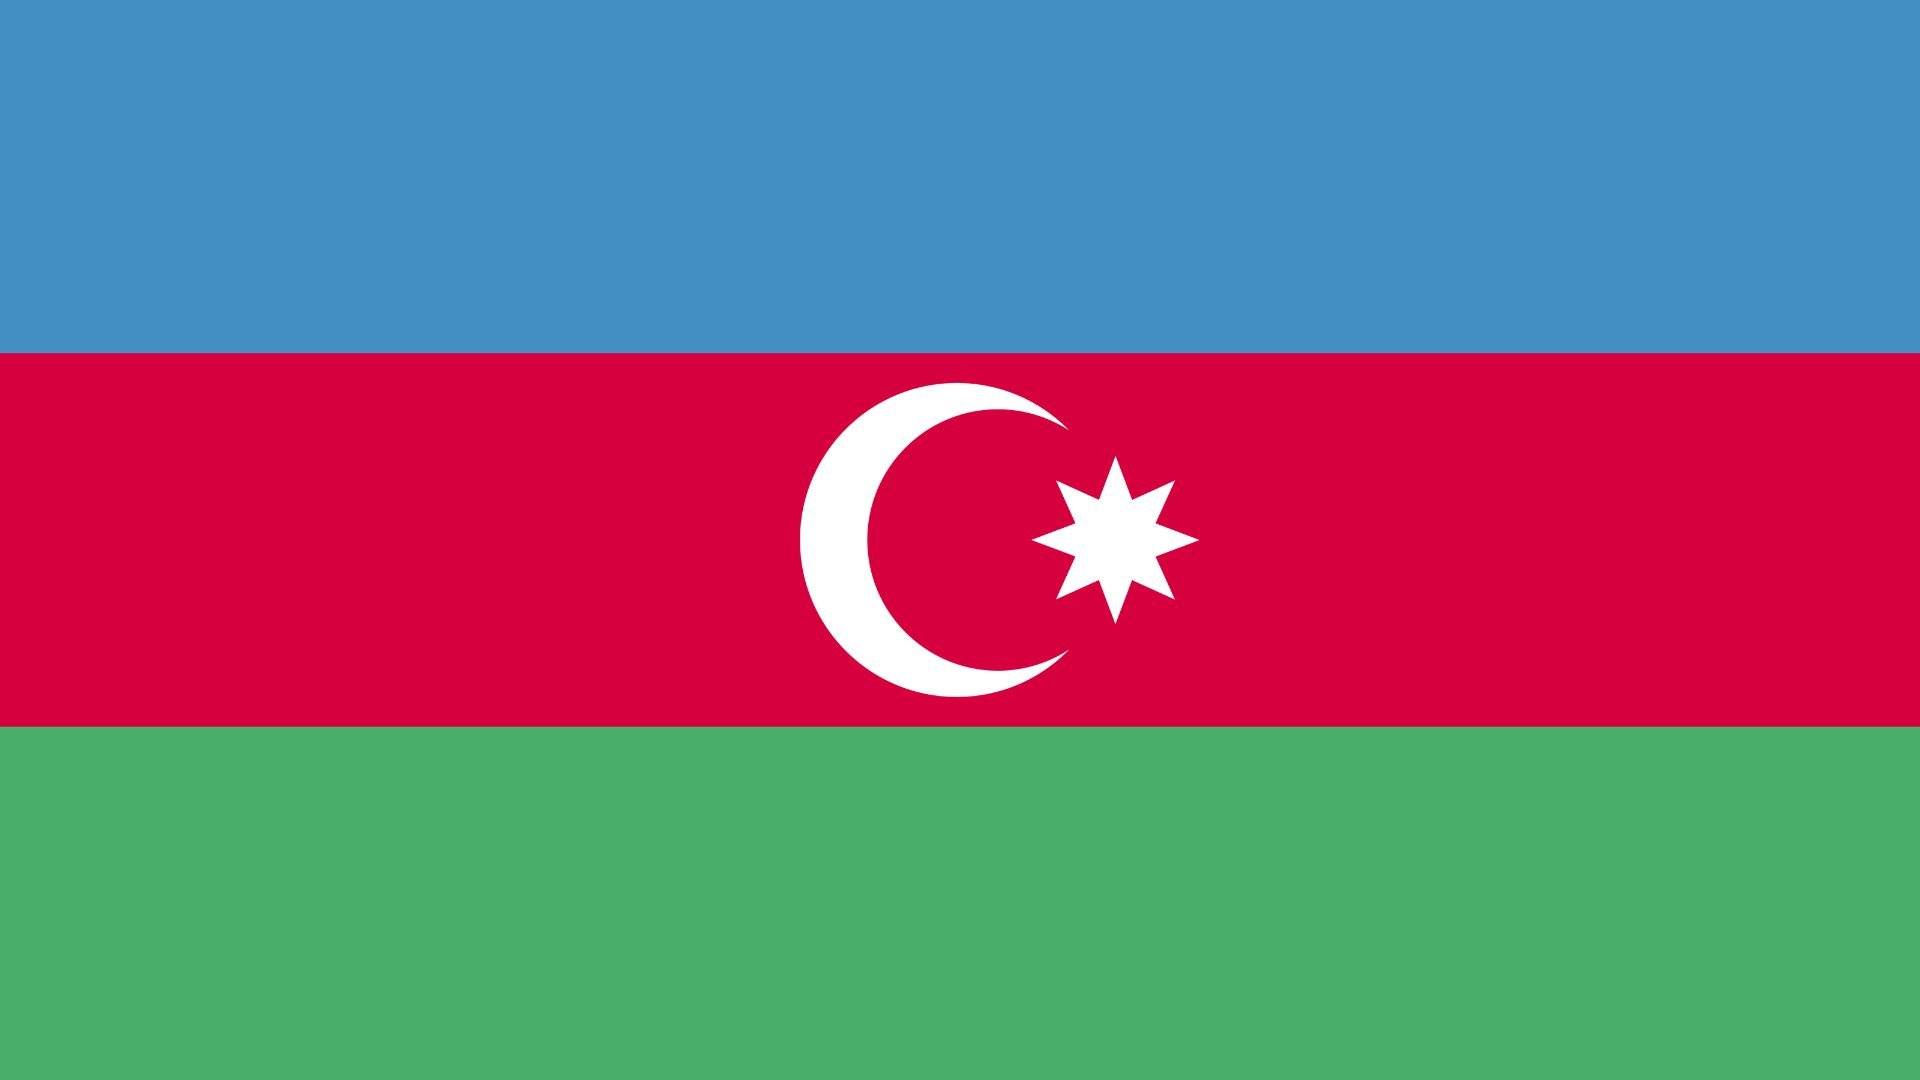 A bandeira do Azerbaijão é uma bandeira tricolor composta por três faixas horizontais de tamanho igual, sendo azul a superior, vermelha a central e verde a inferior. No centro da faixa vermelha, aparecem uma lua crescente branca e uma estrela de oito pontas também de cor branca.